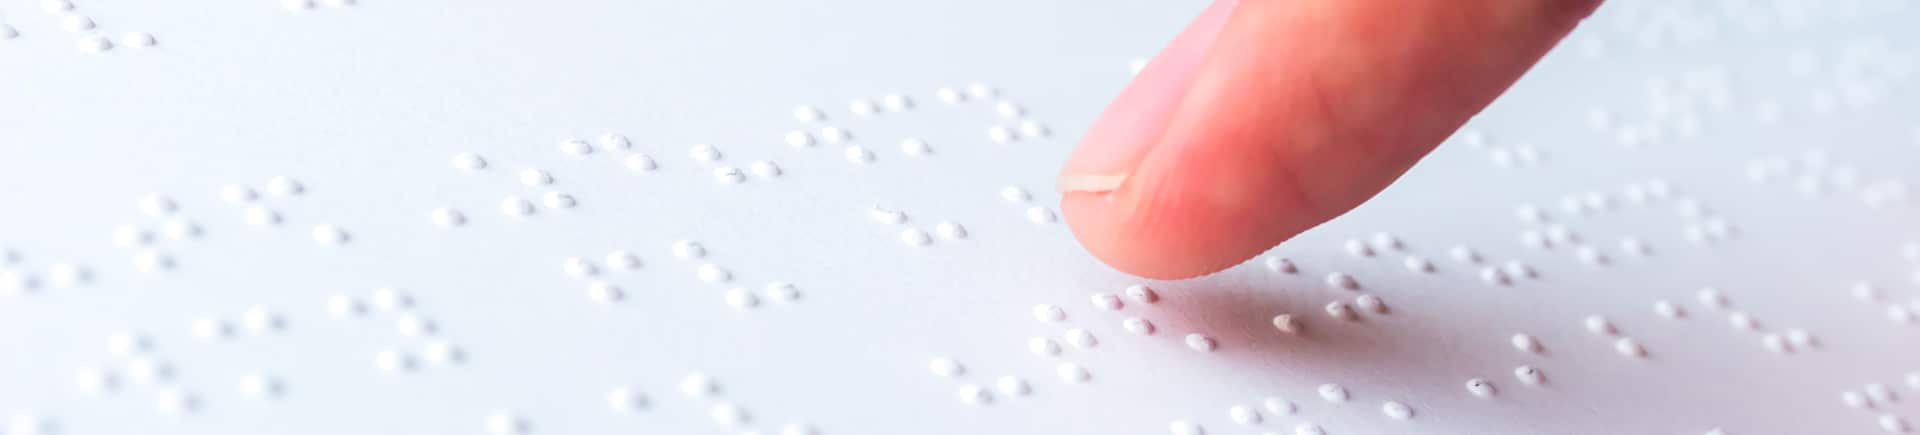 Bloc-notes braille, saisie et lecture électronique du braille pour aveugles